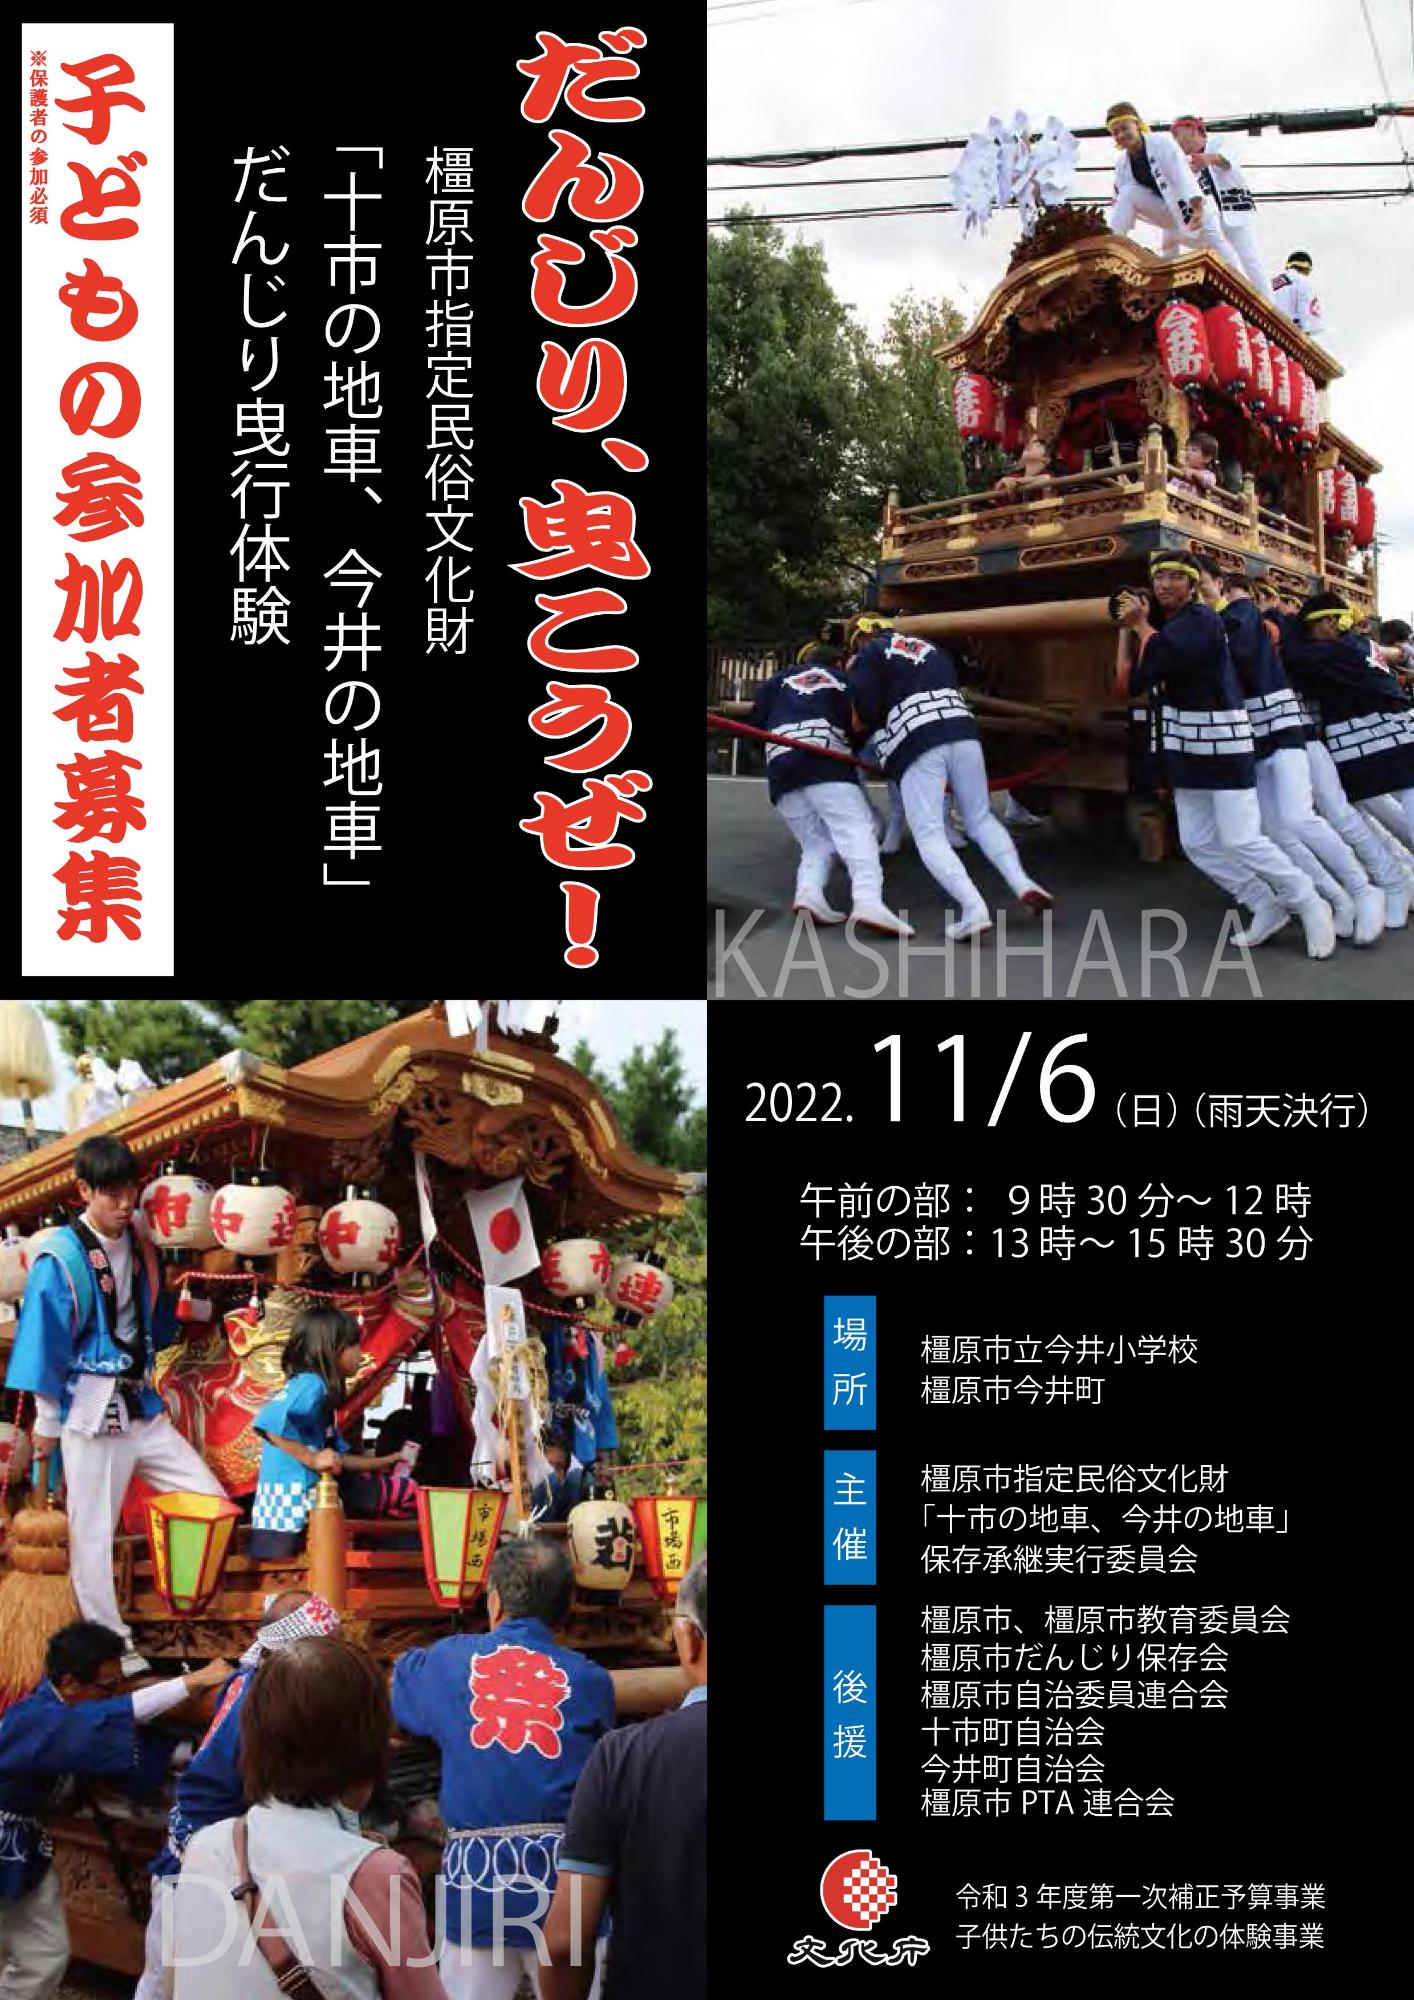 2022年11月6日開催のだんじり祭りのチラシ画像